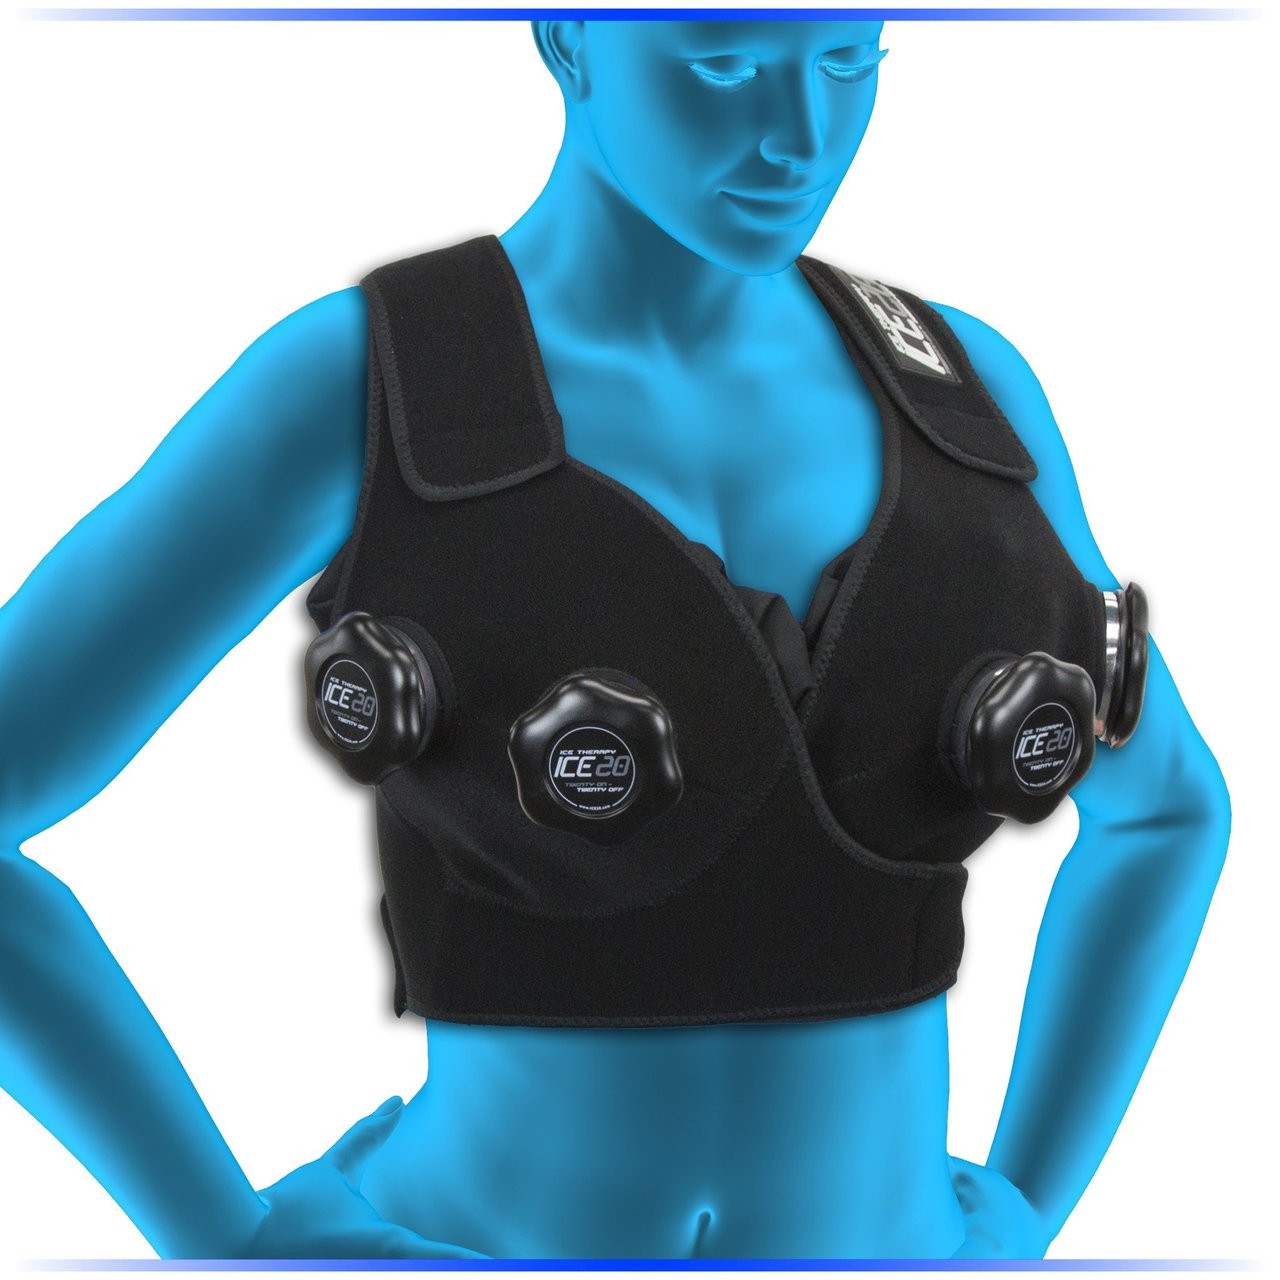 SRC Relief Breast-Eze Ice & Heat Packs